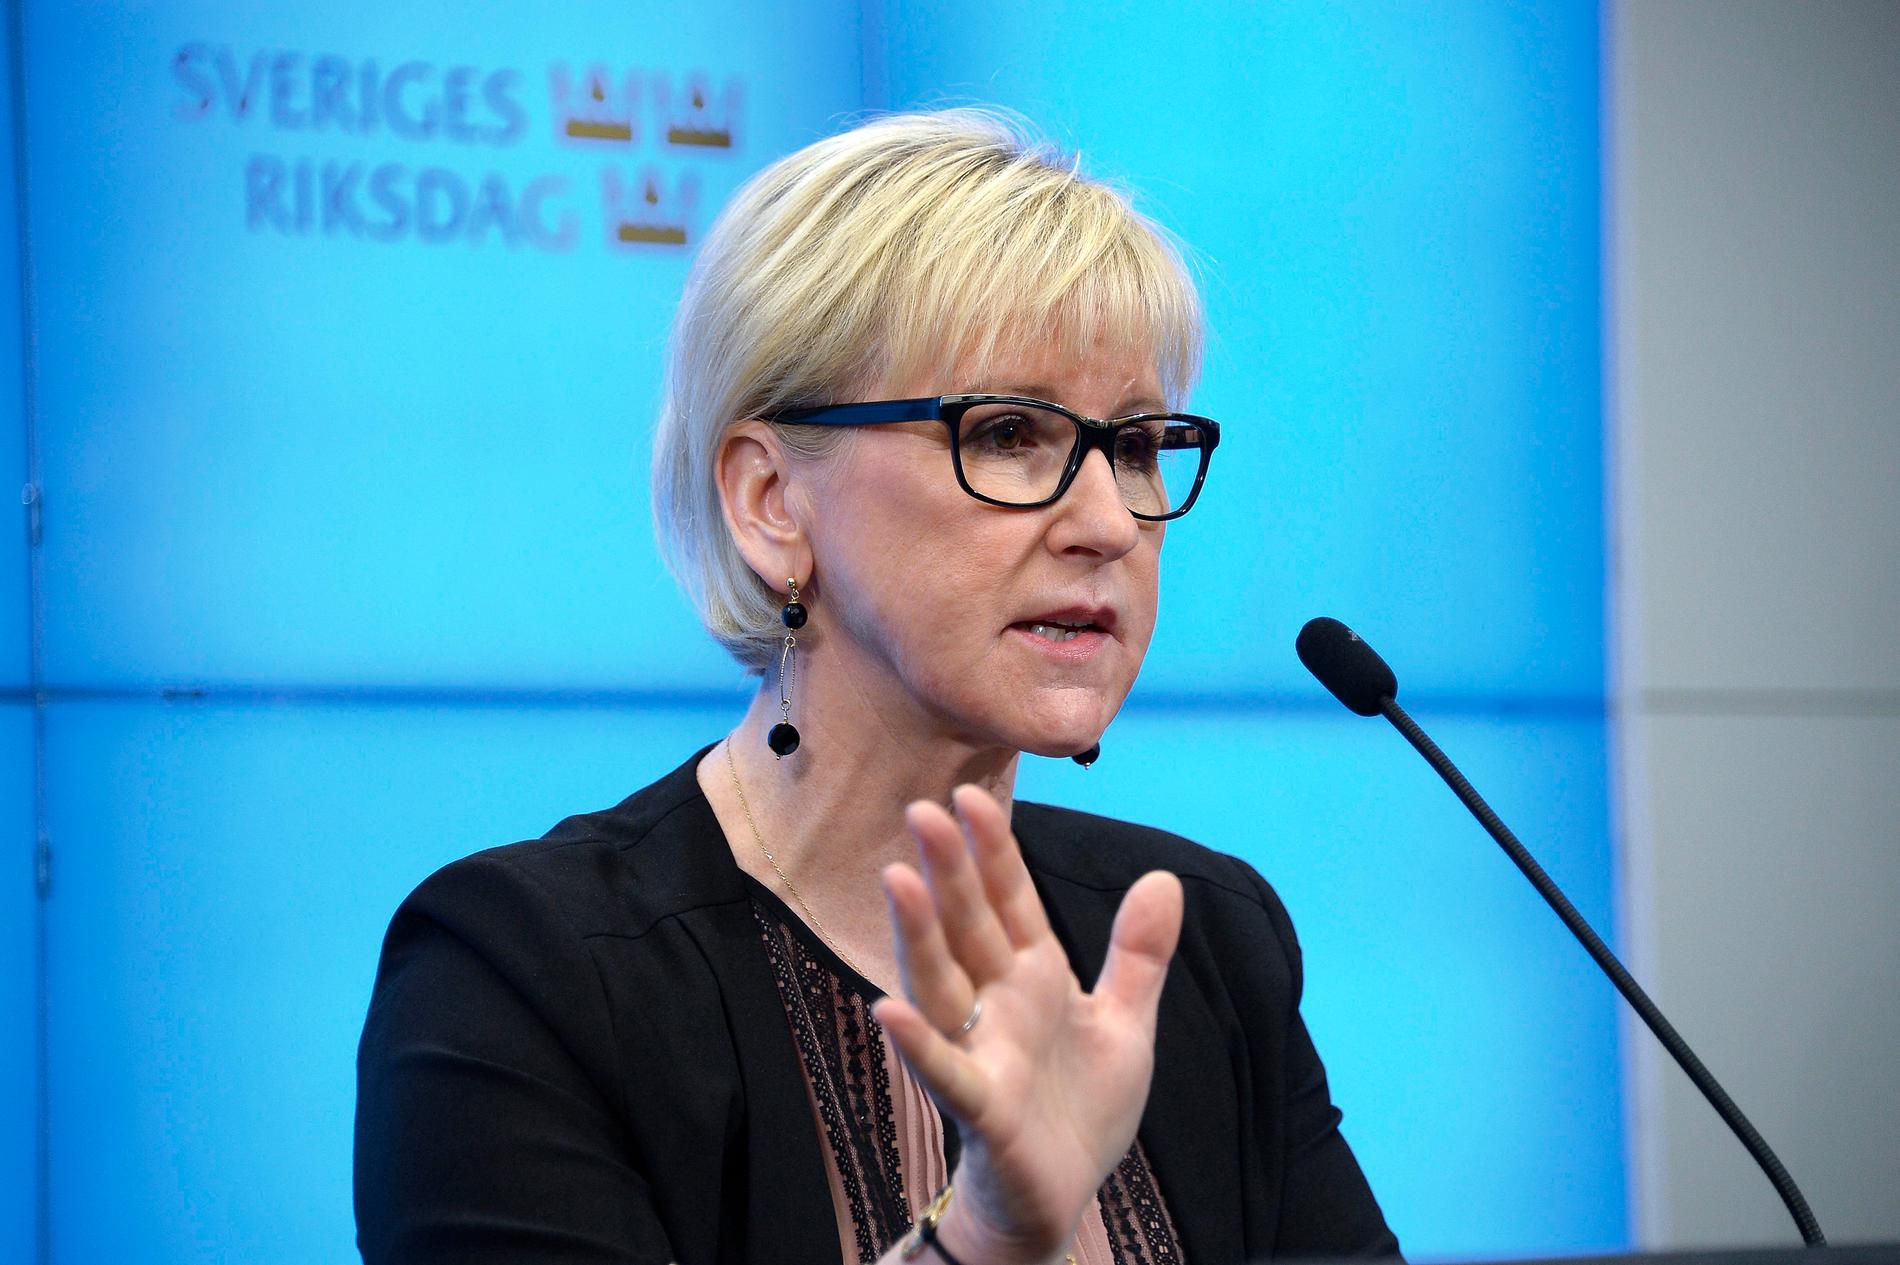 Utrikesminister Margot Wallströms hårda kritik mot Saudiarabien har fått konsekvensen att två ambassadörer, en från Saudiarabien och en från Förenande Arabemiraten, har kallats hem från Sverige.